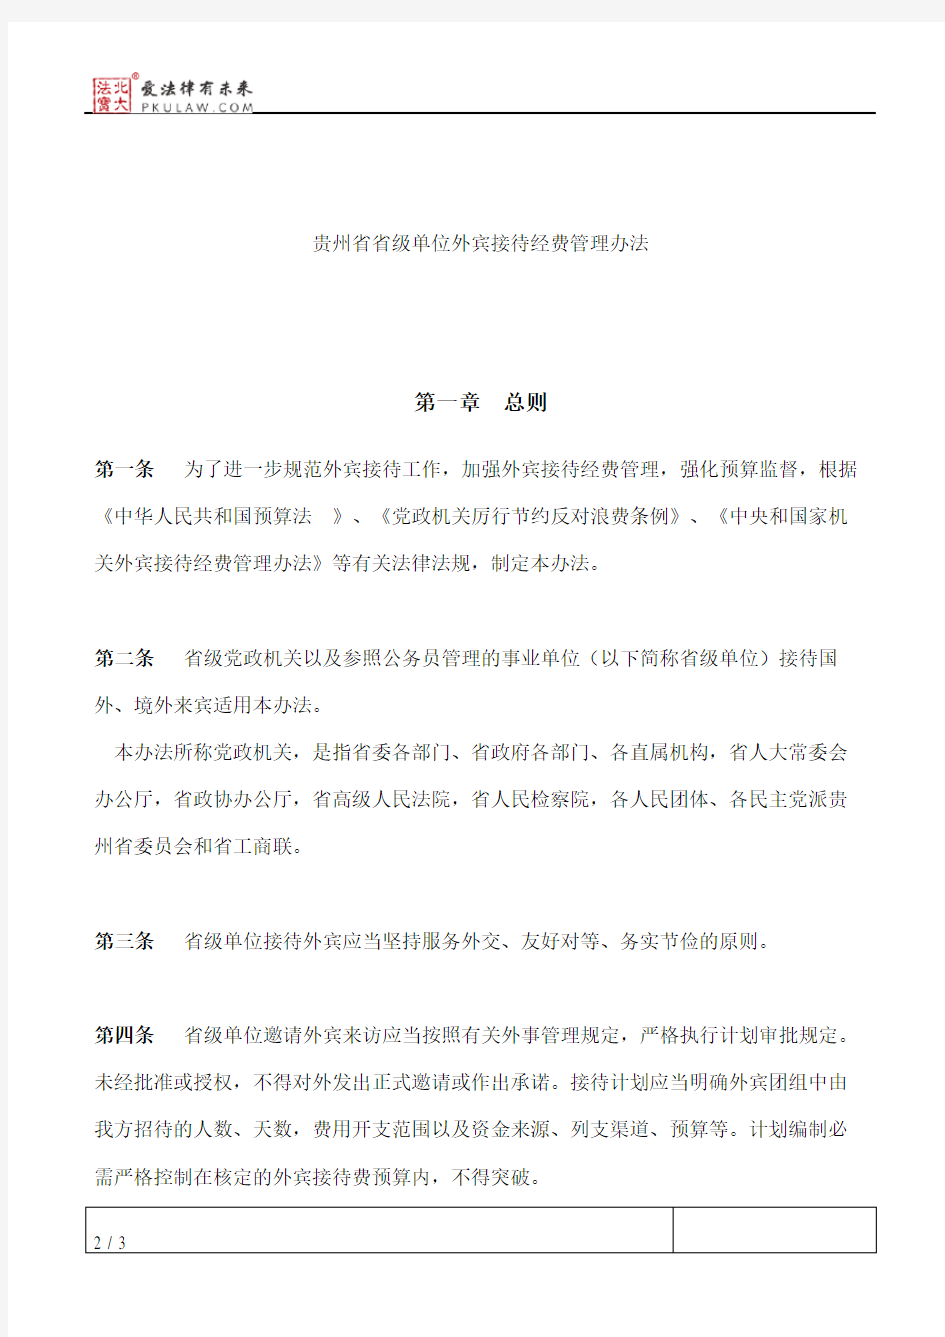 贵州省财政厅关于印发《贵州省省级单位外宾接待经费管理办法》的通知